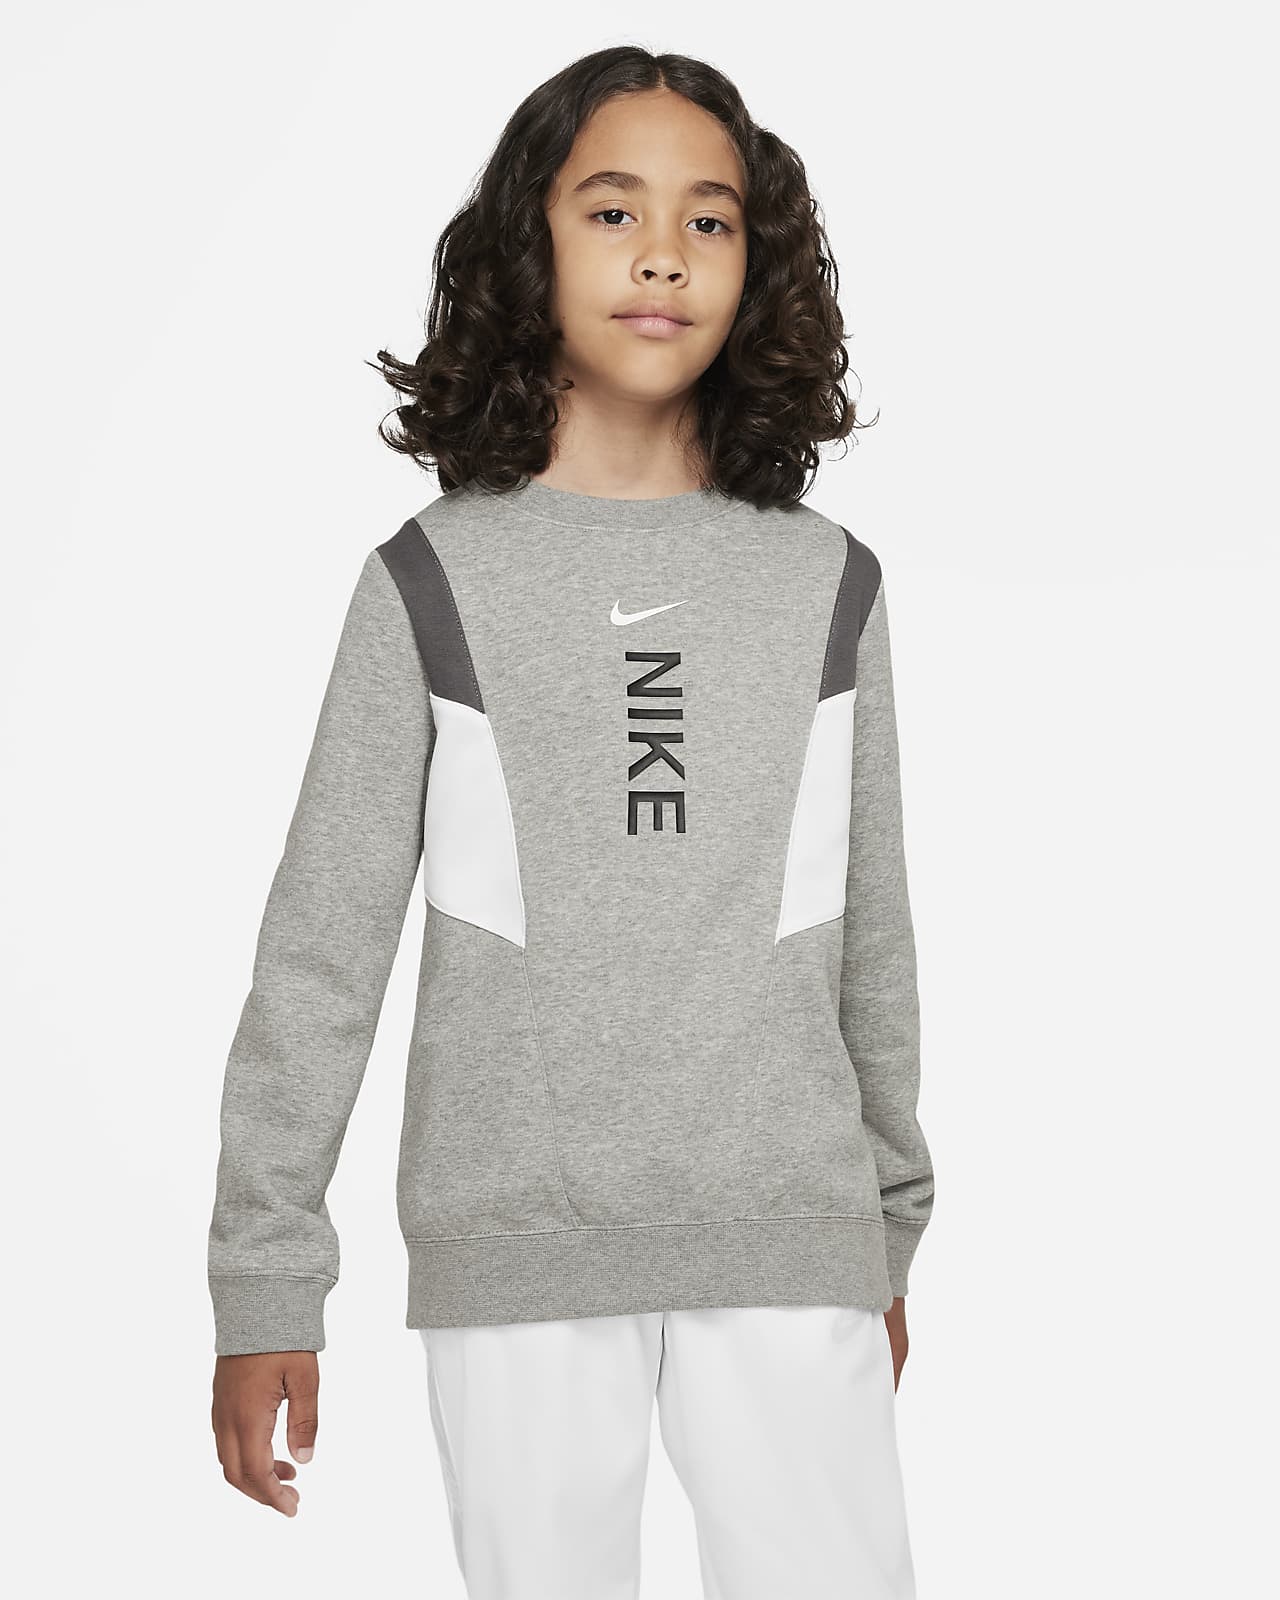 Nike Sportswear Hybrid Older Kids' (Boys') Fleece Sweatshirt